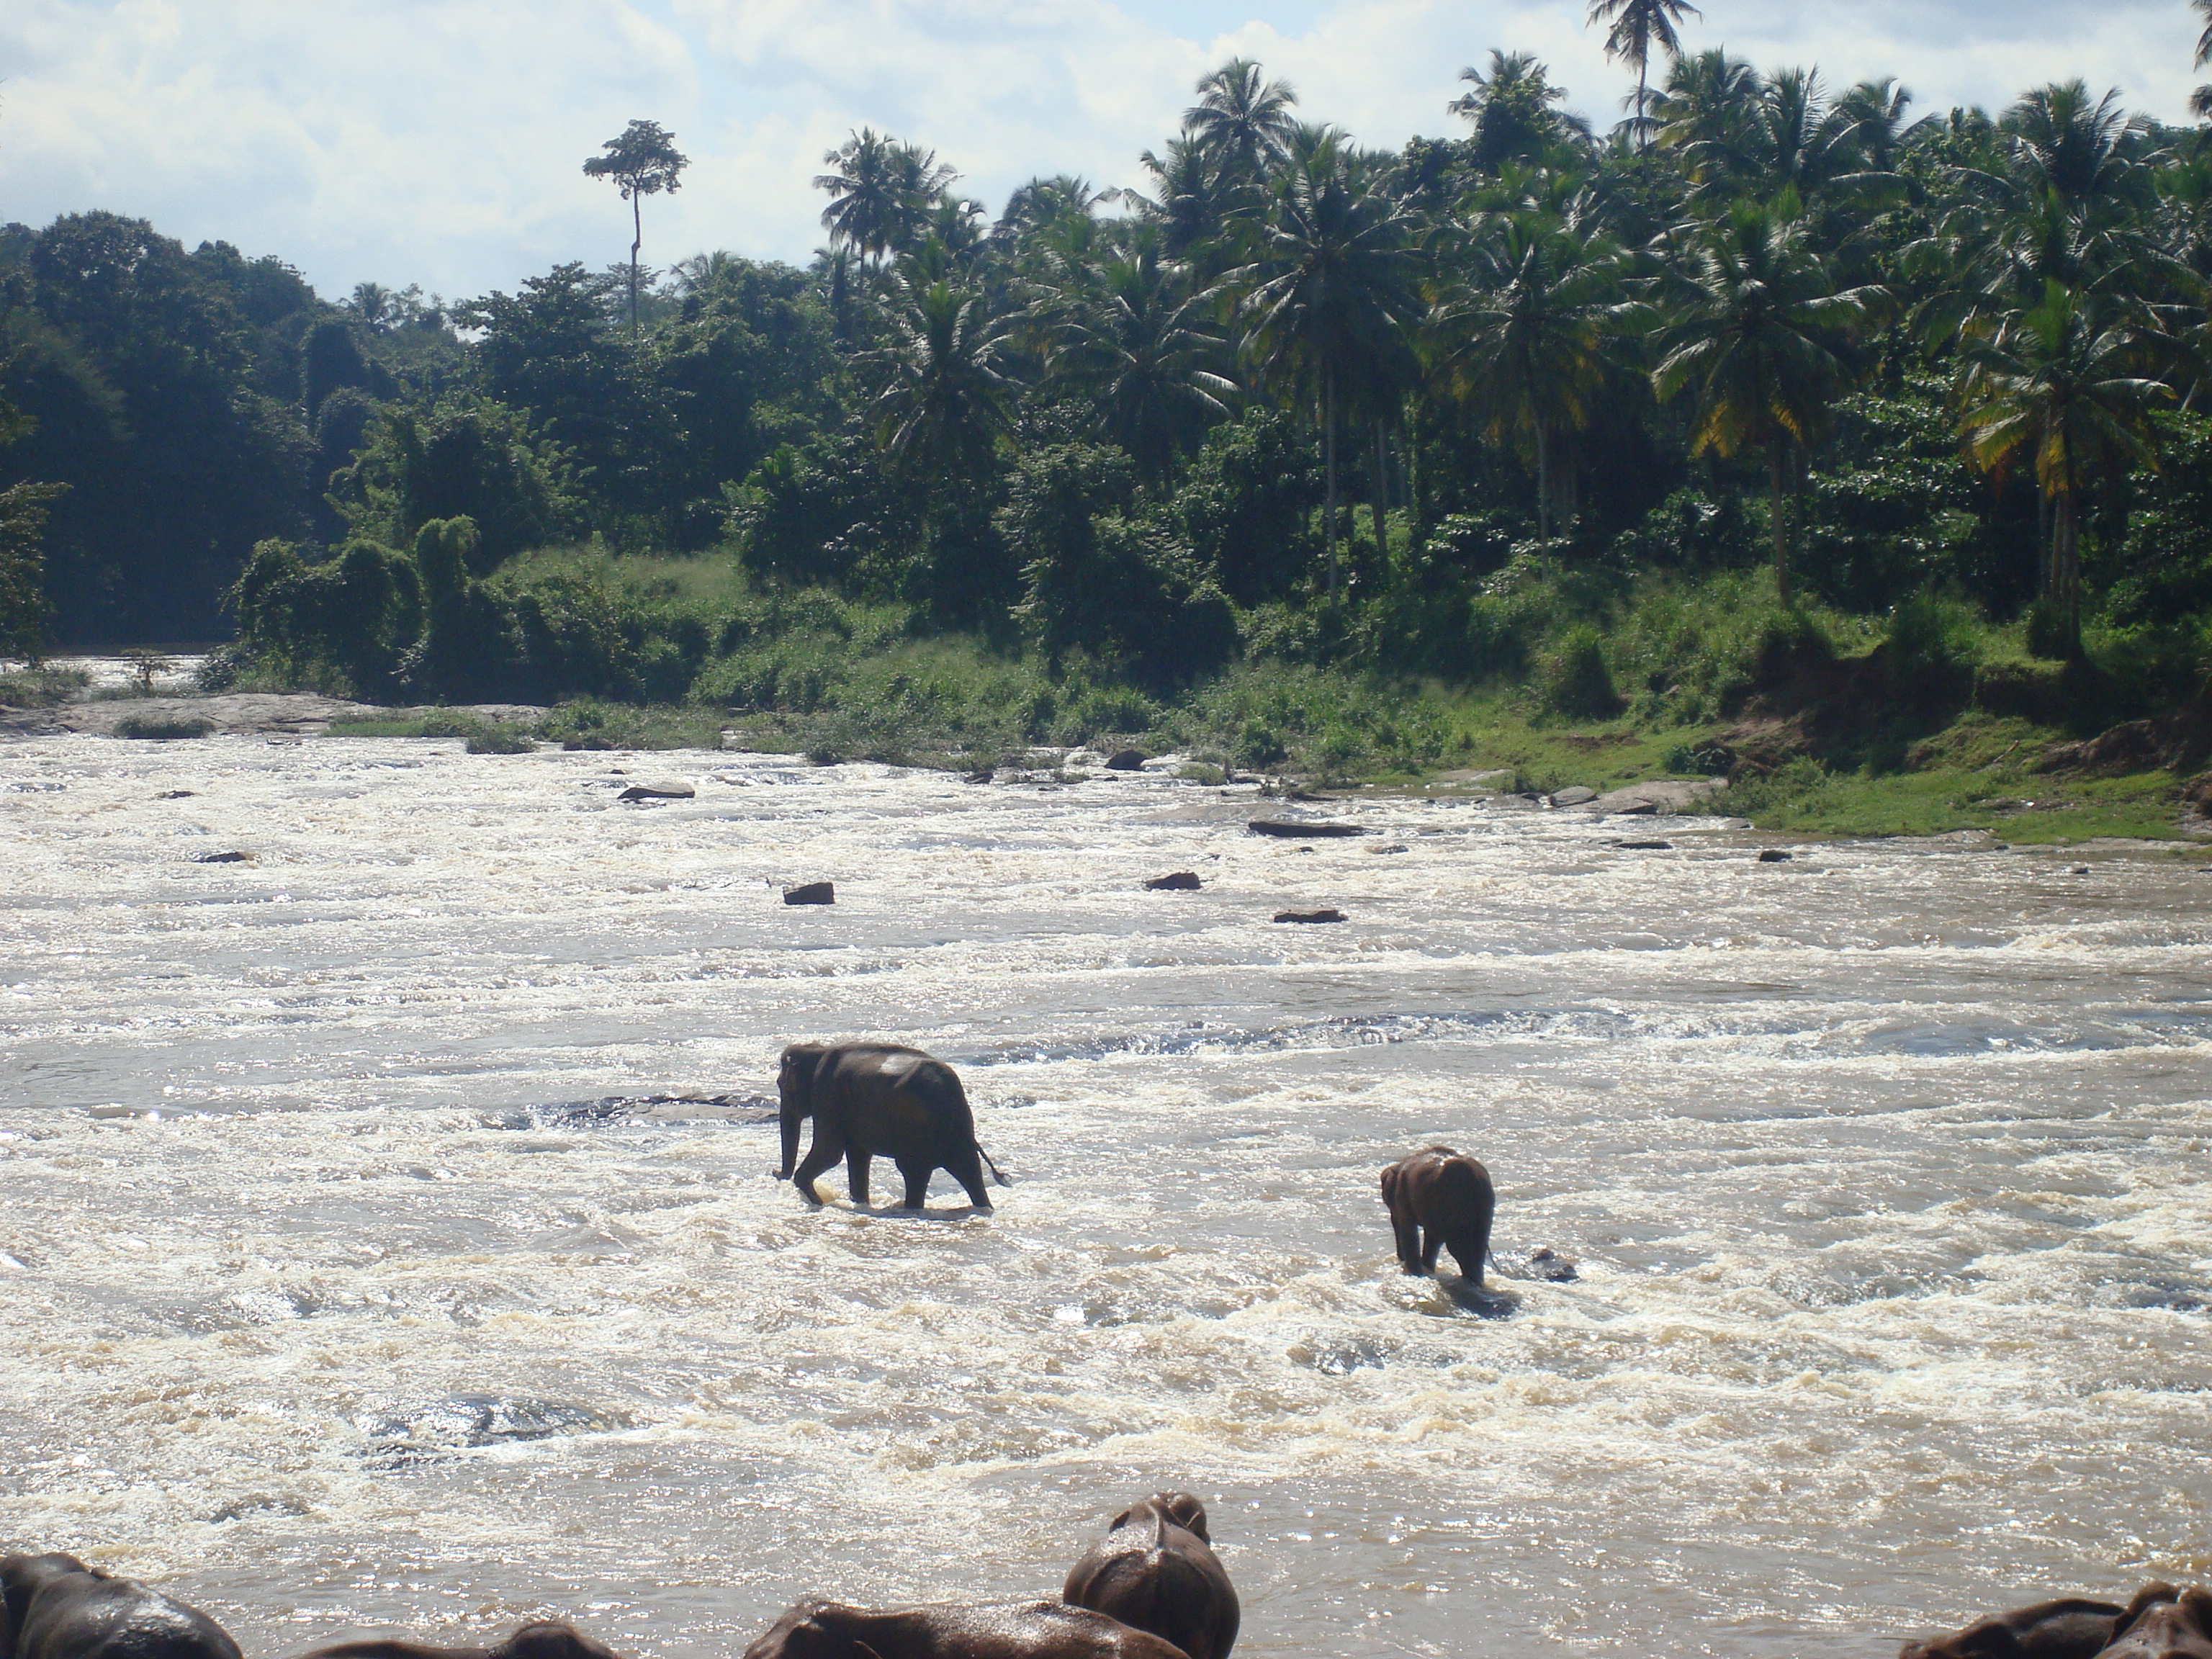 Elephants in the river in Sri Lanka